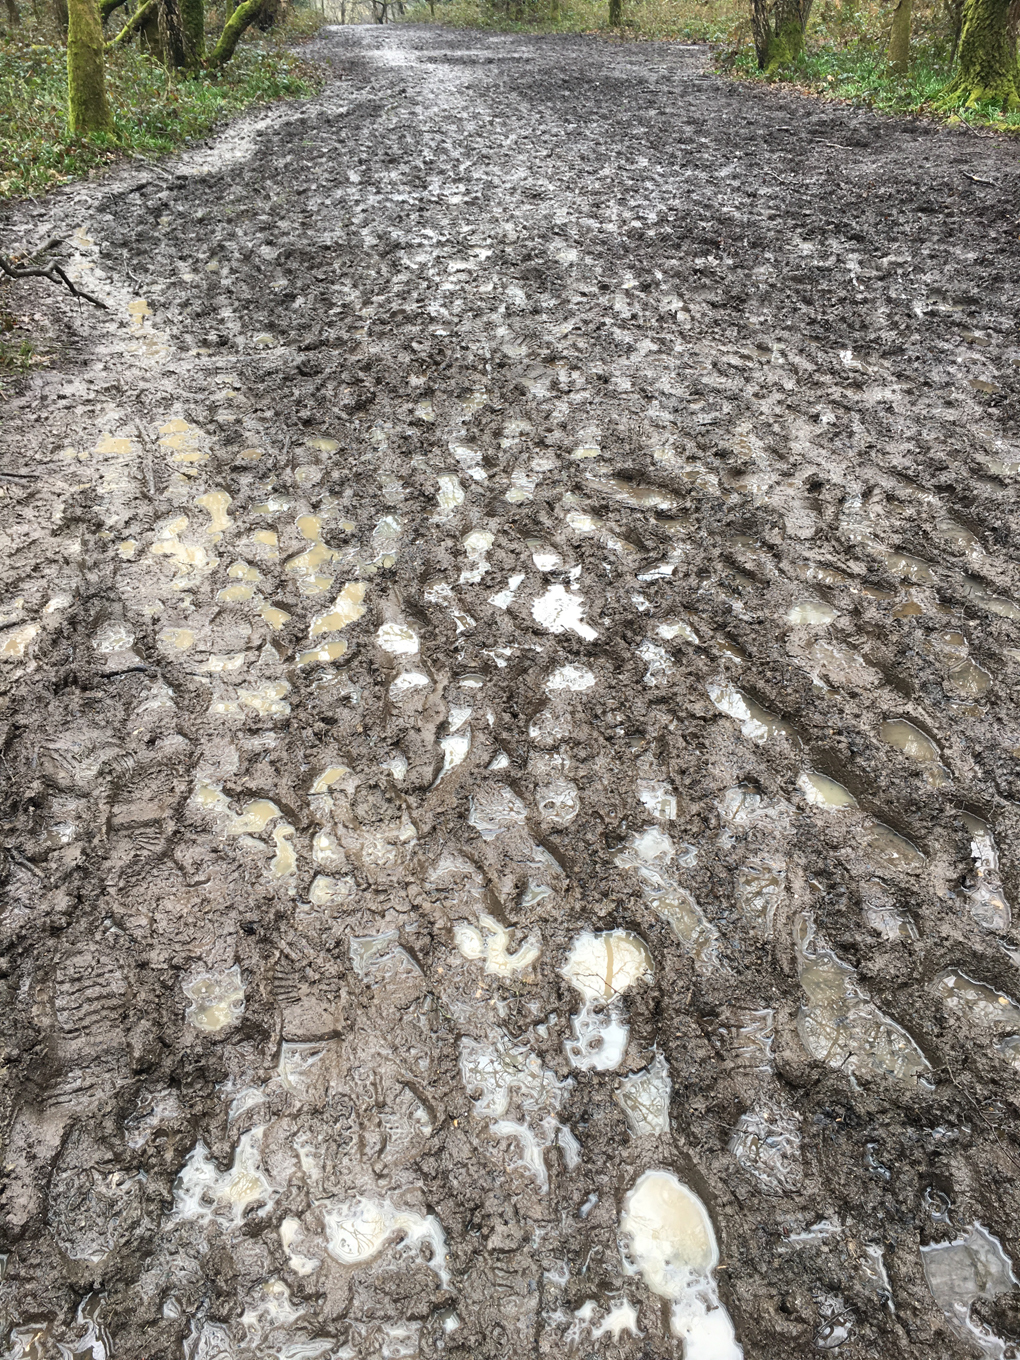 footprints in the mud